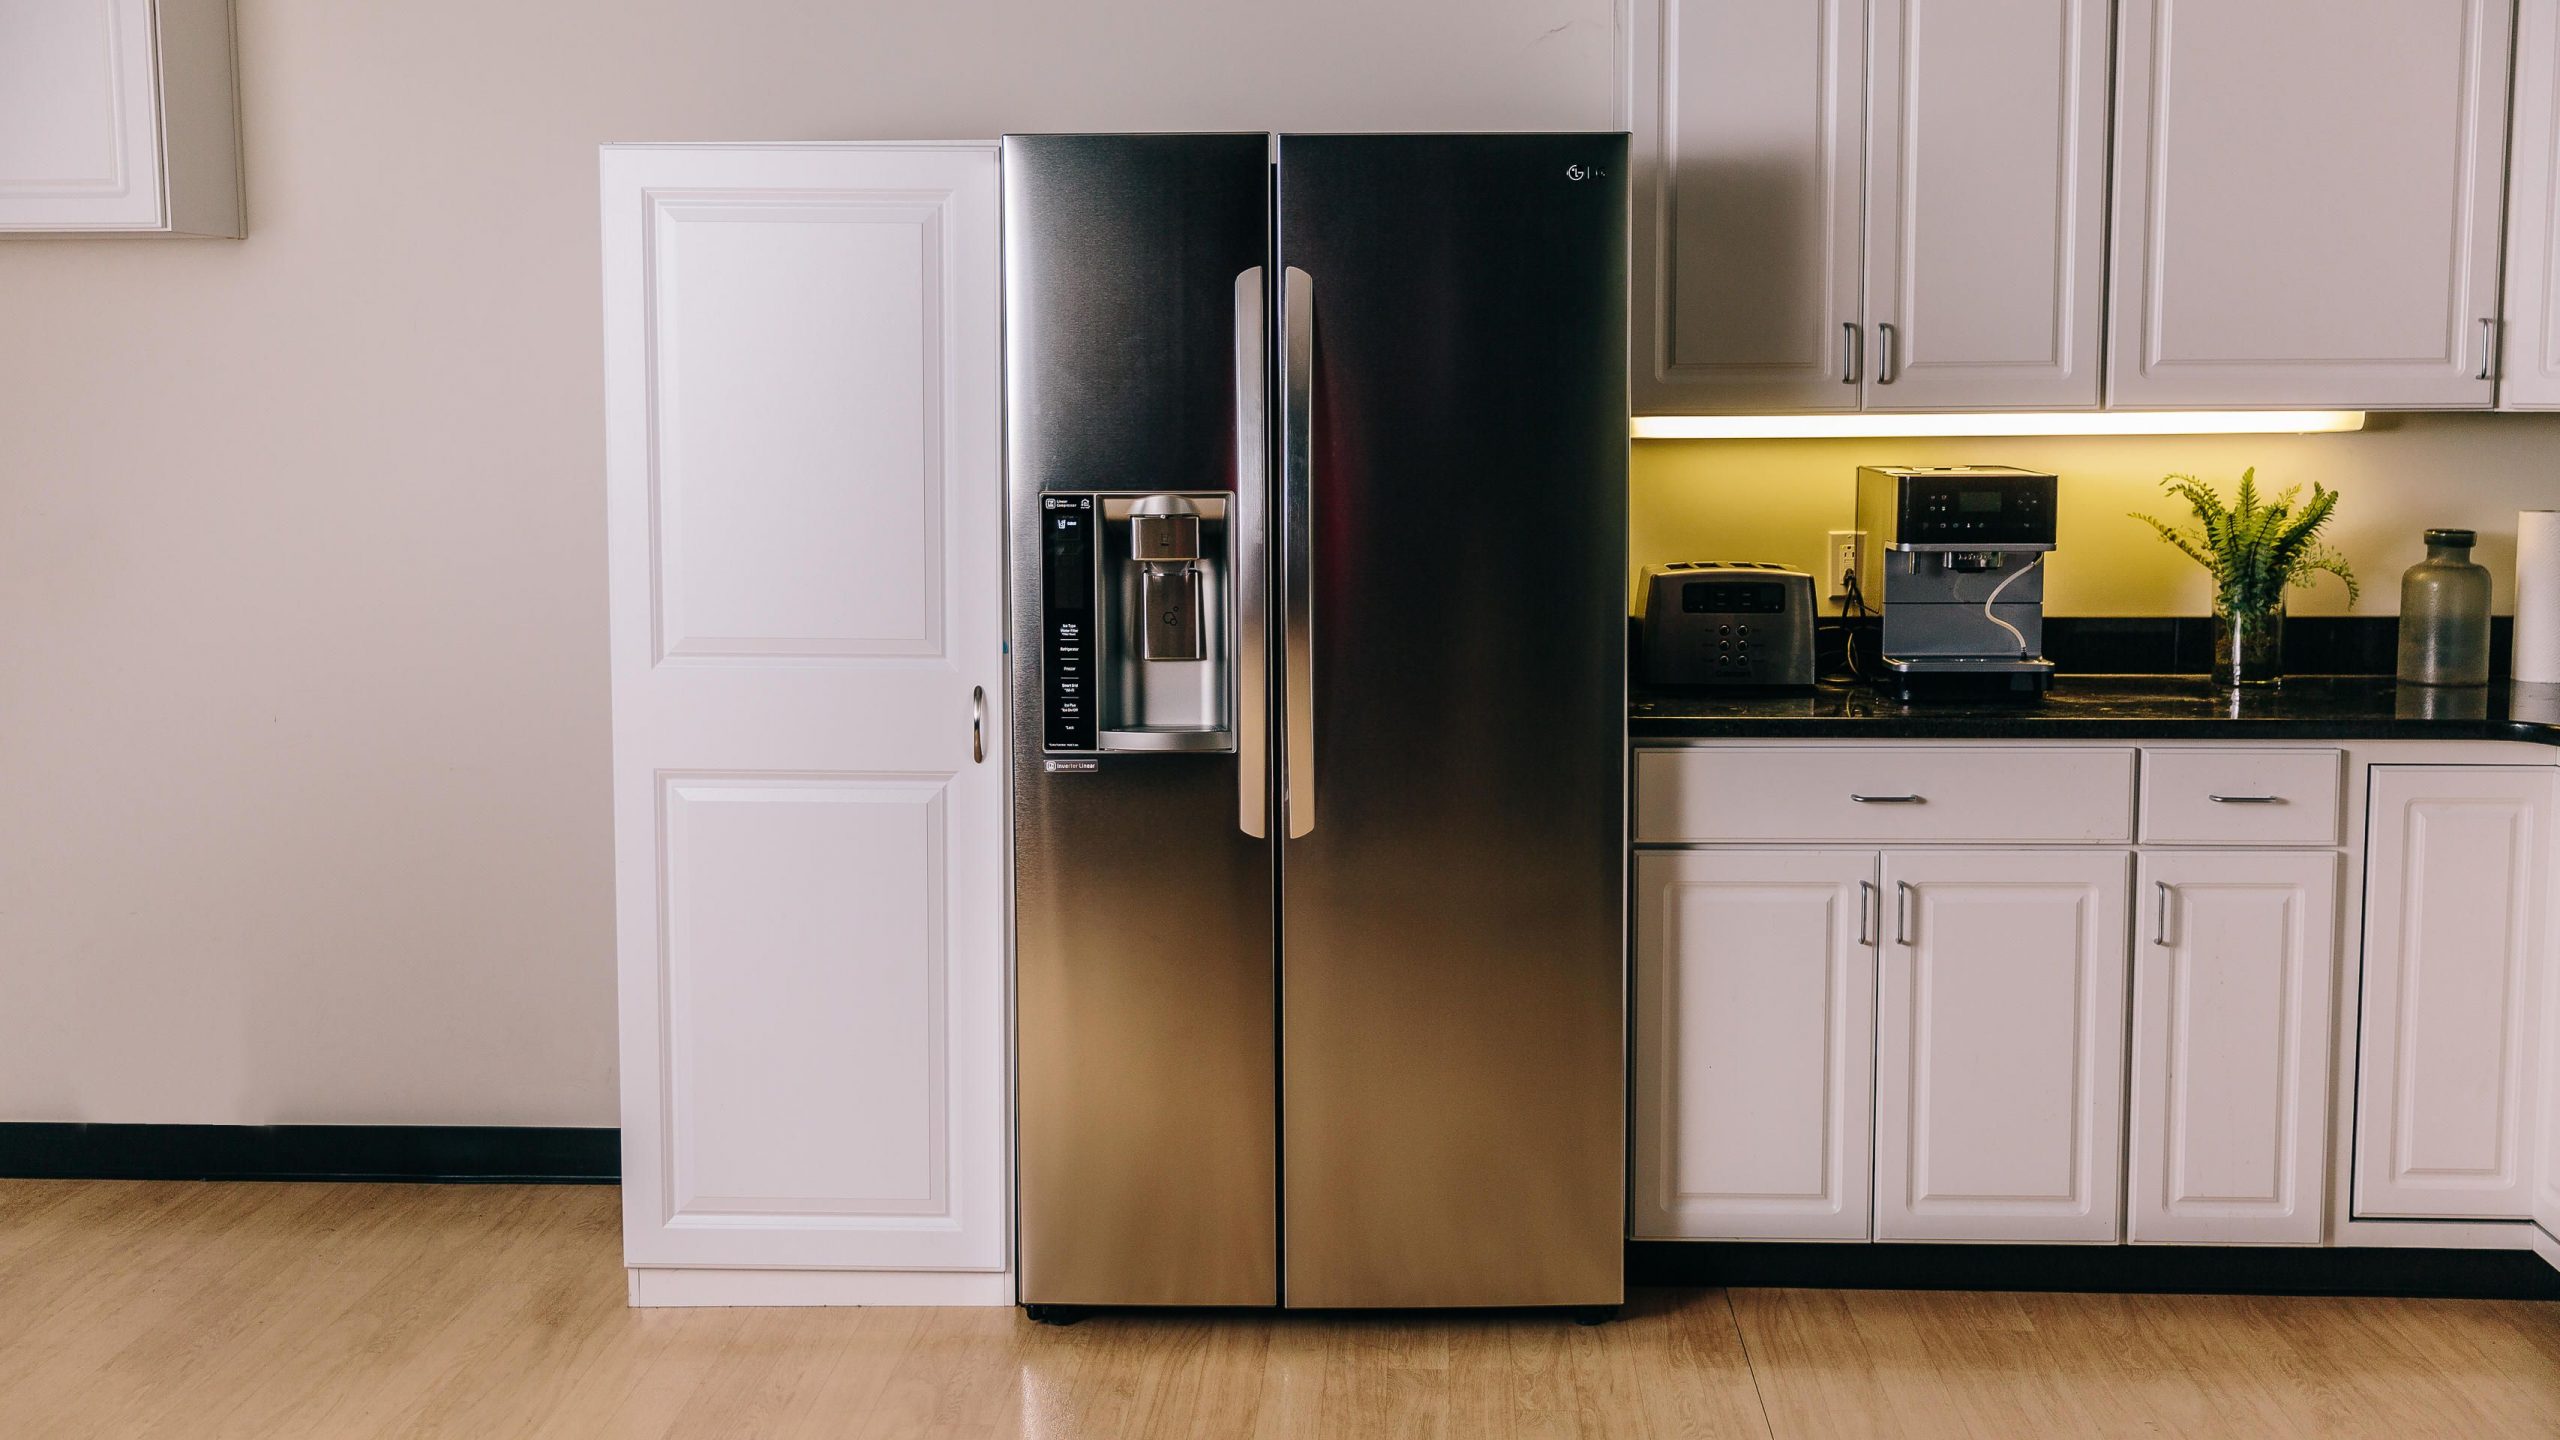 Tủ lạnh LG GR-X247JS tôn lên vẻ sang trọng, hiện đại cho gian bếp nhà bạn 